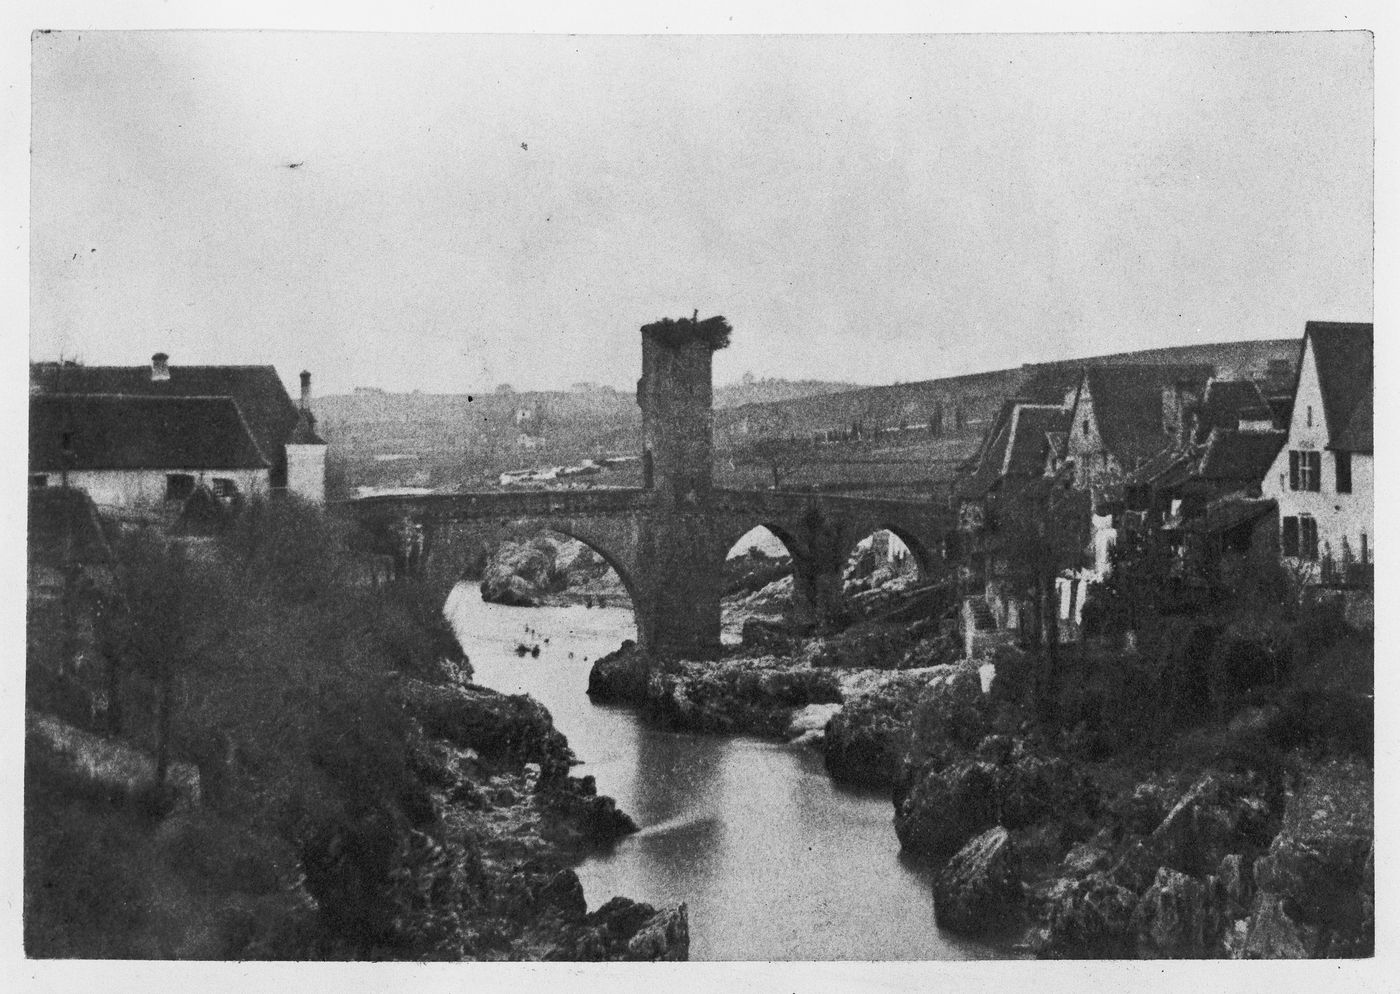 View of Pont Vieux spanning the Gave de Pau, Orthez, France